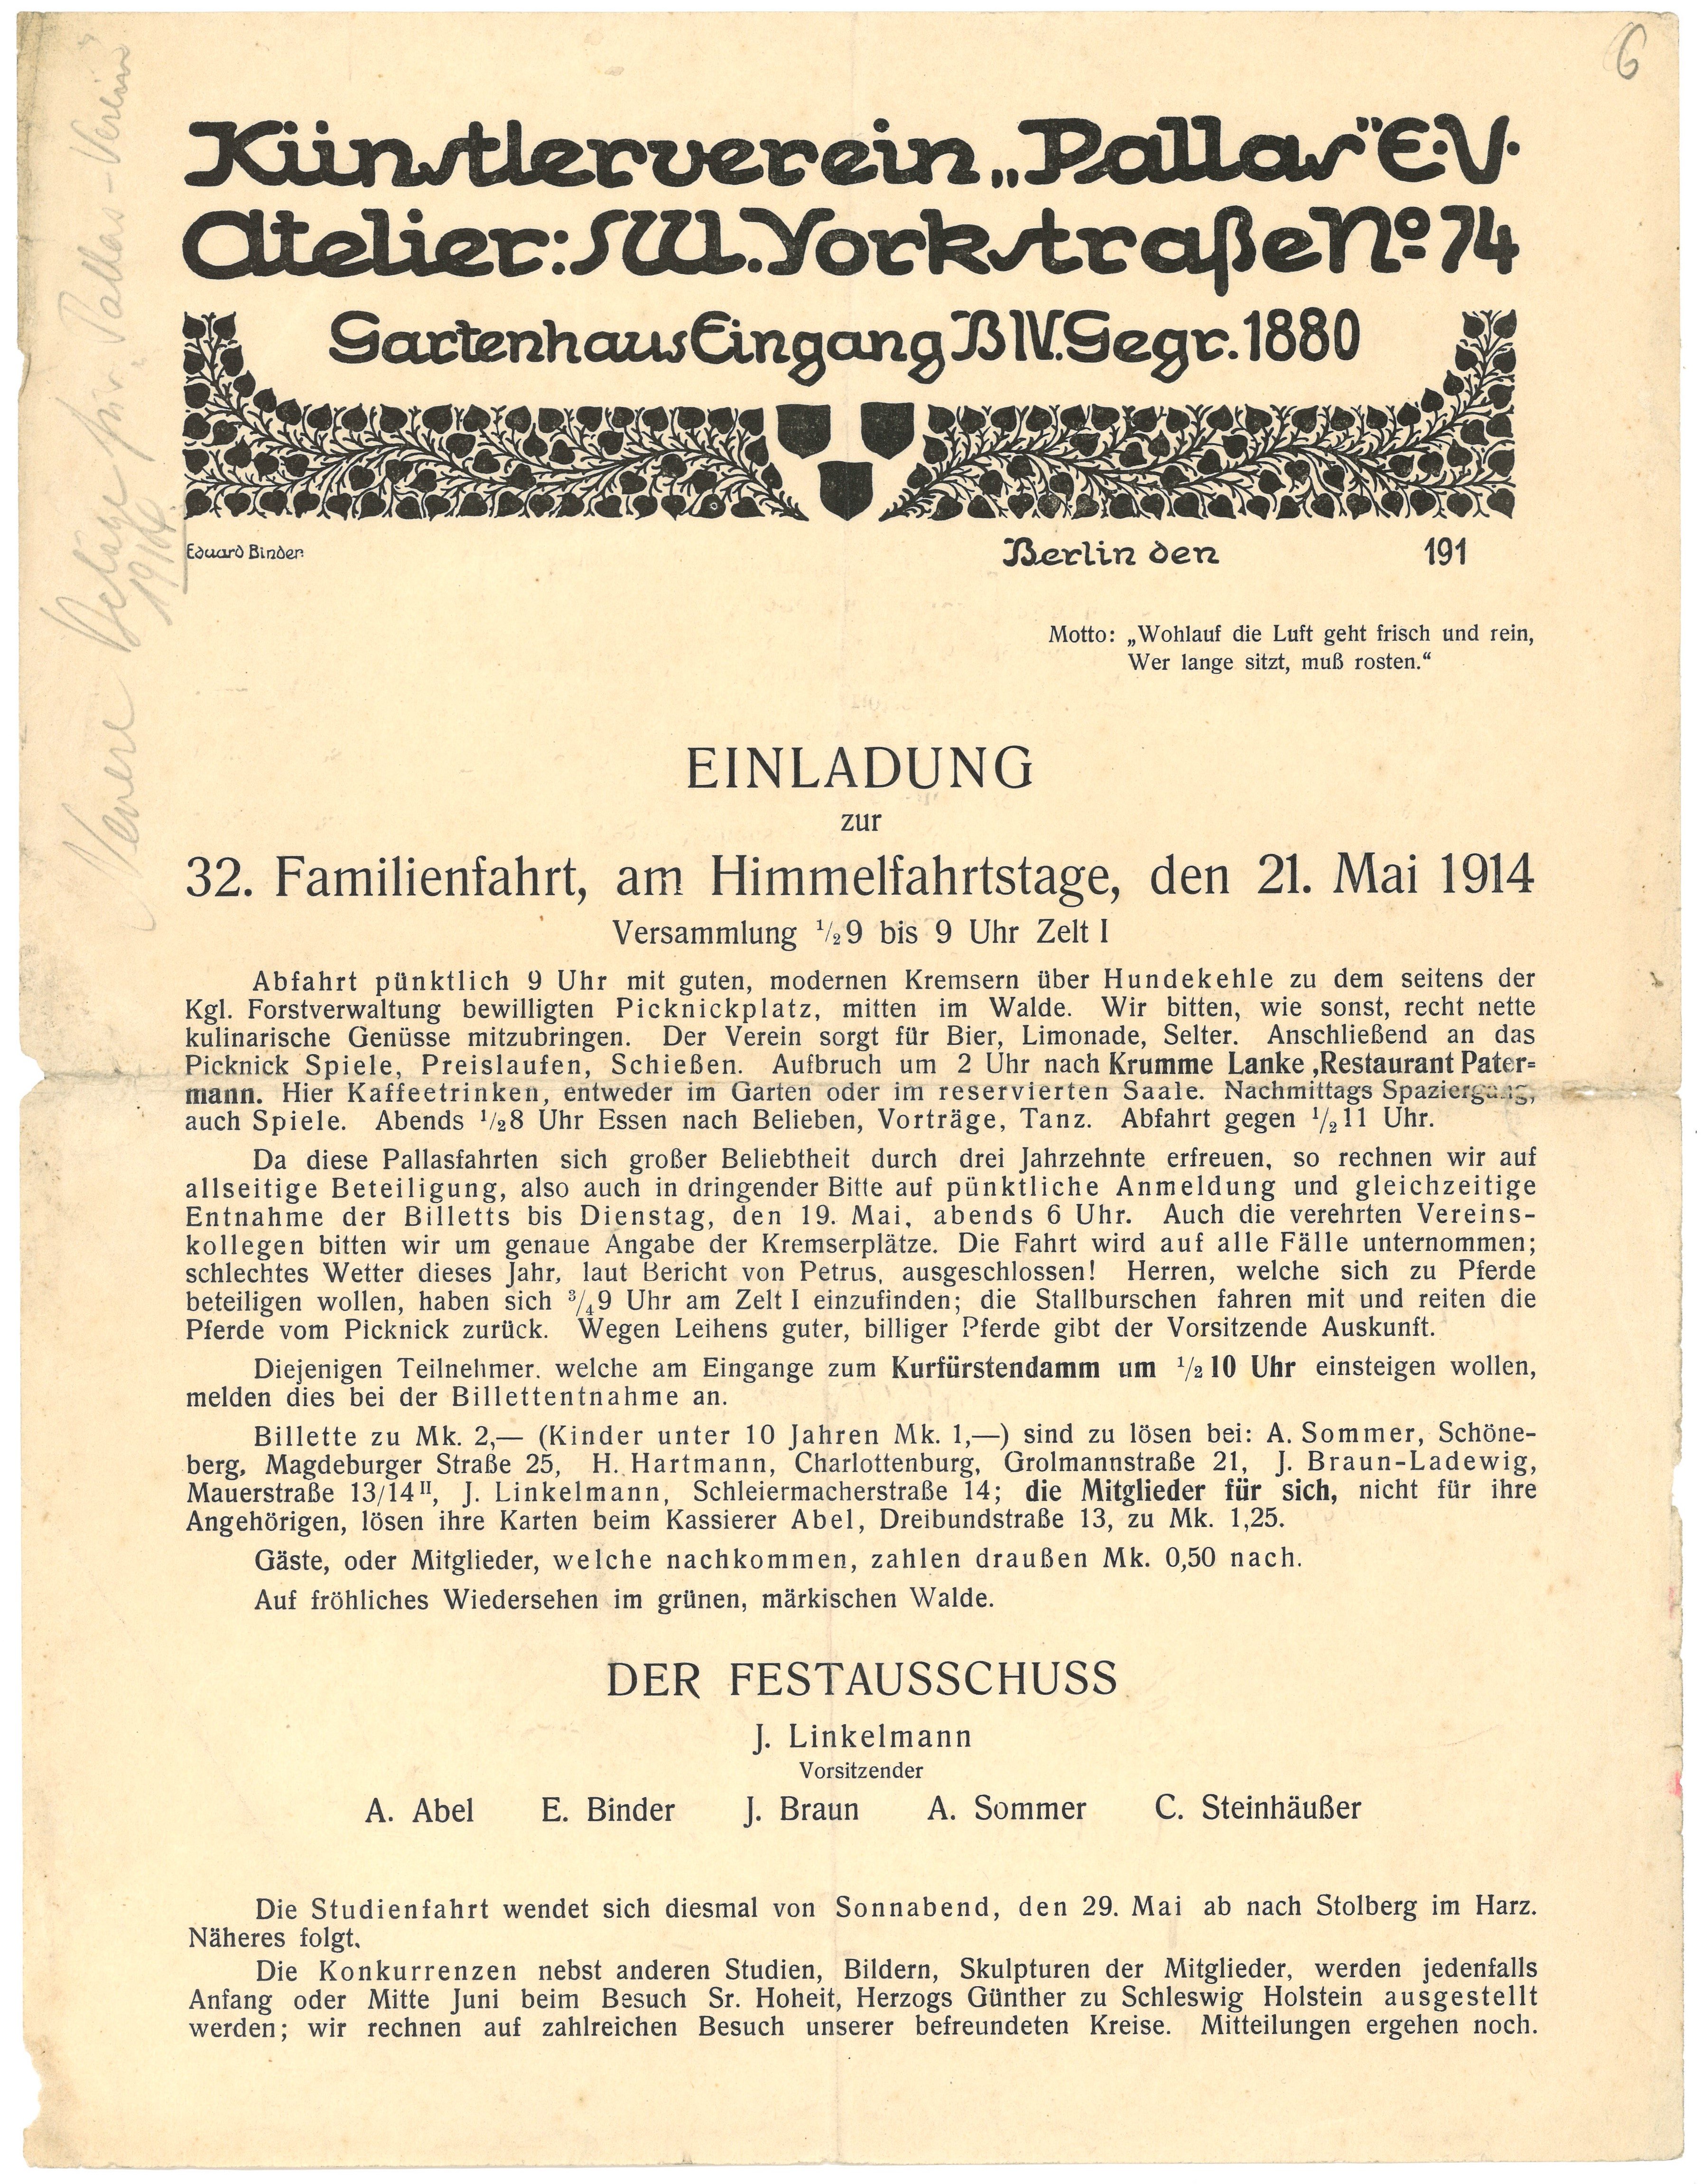 Einladung zur 32. Familienfahrt des Künstlervereins "Pallas" in Berlin 1914 (Landesgeschichtliche Vereinigung für die Mark Brandenburg e.V., Archiv CC BY)